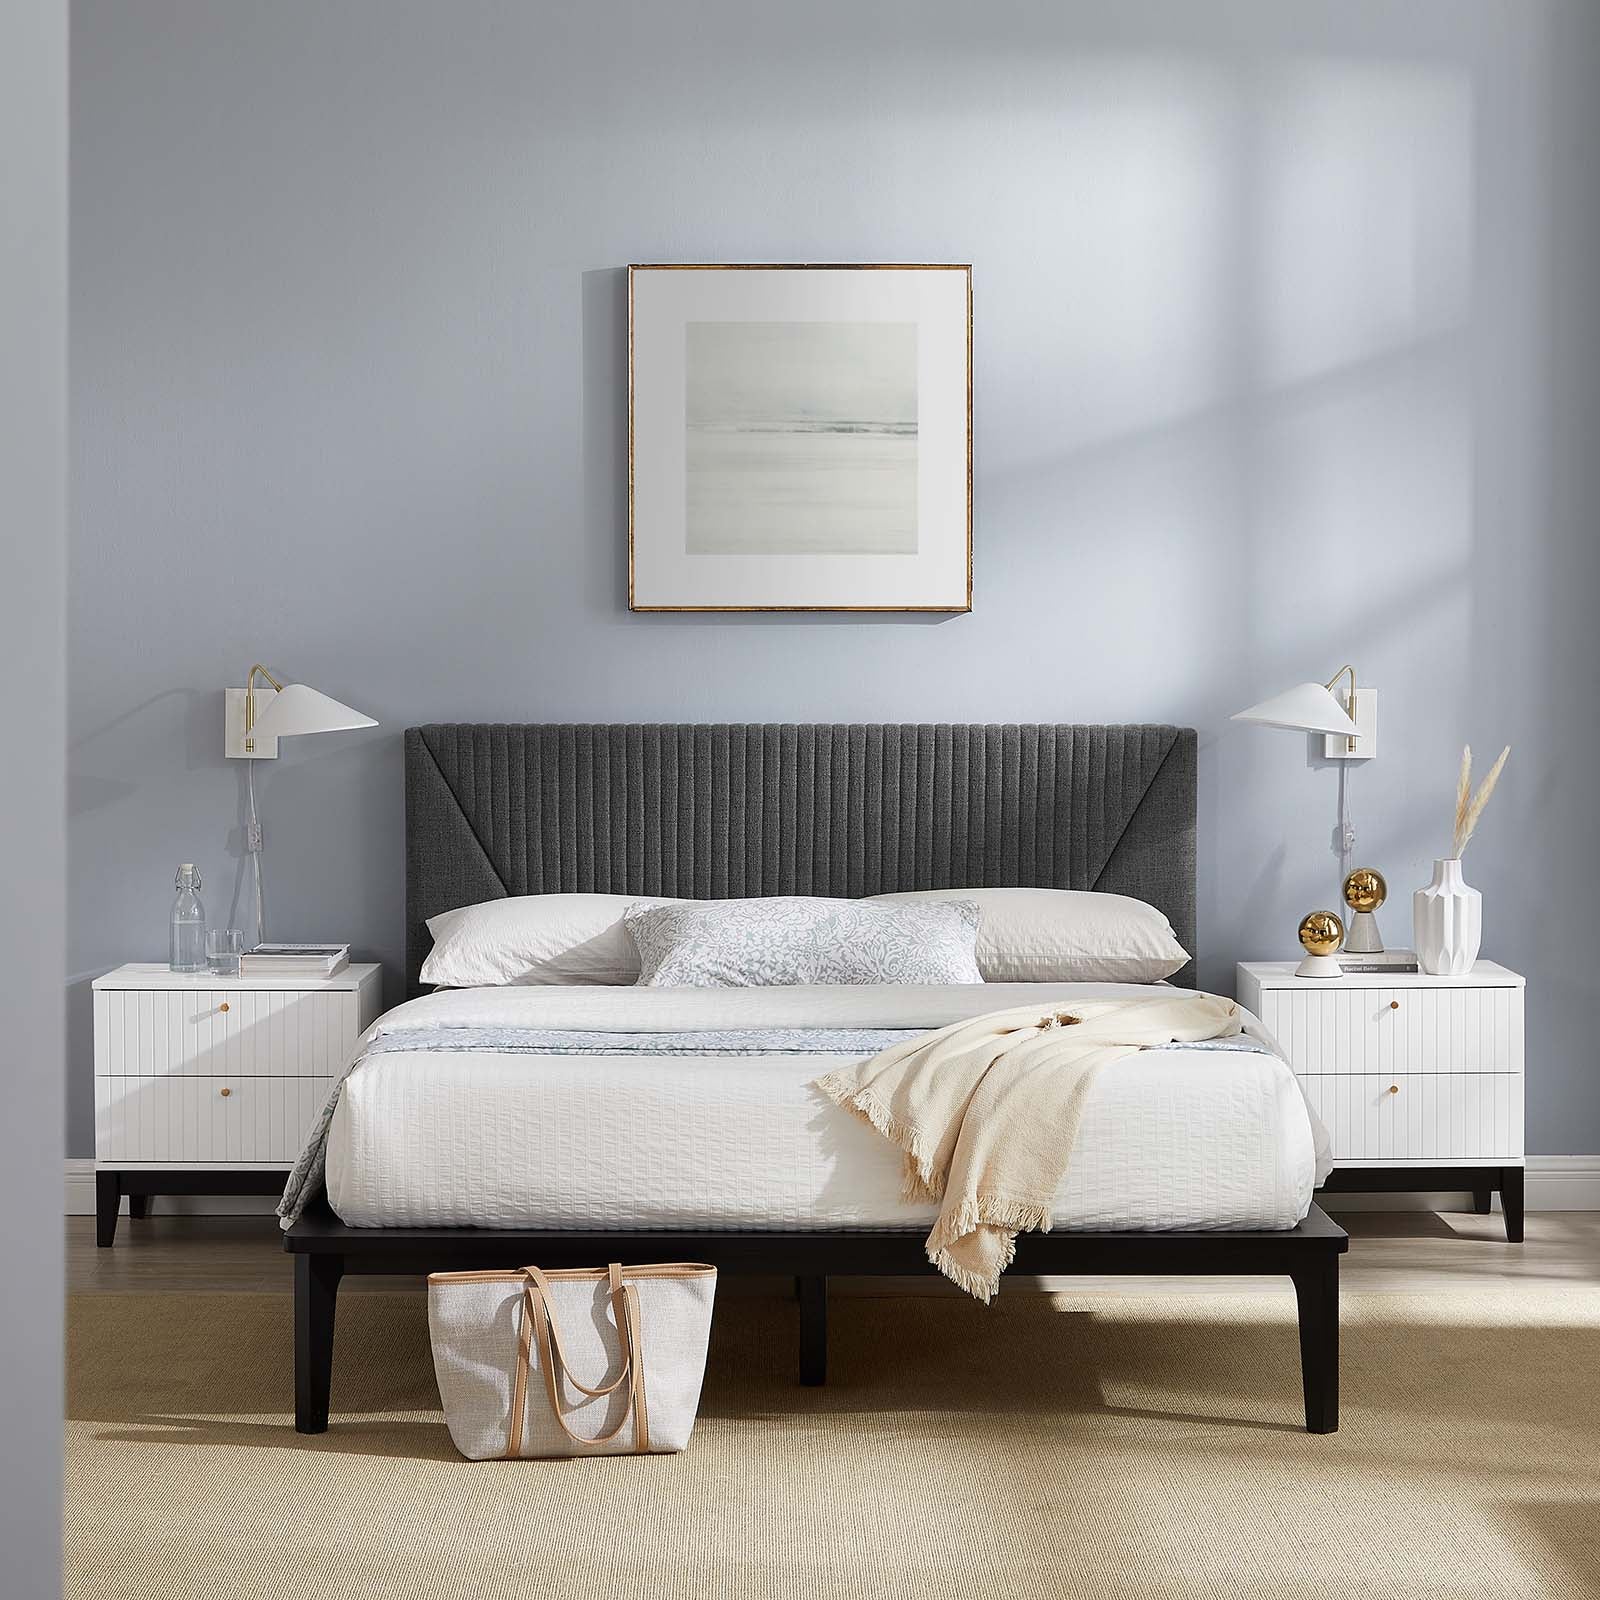 Dakota 3 Piece Upholstered Bedroom Set - East Shore Modern Home Furnishings